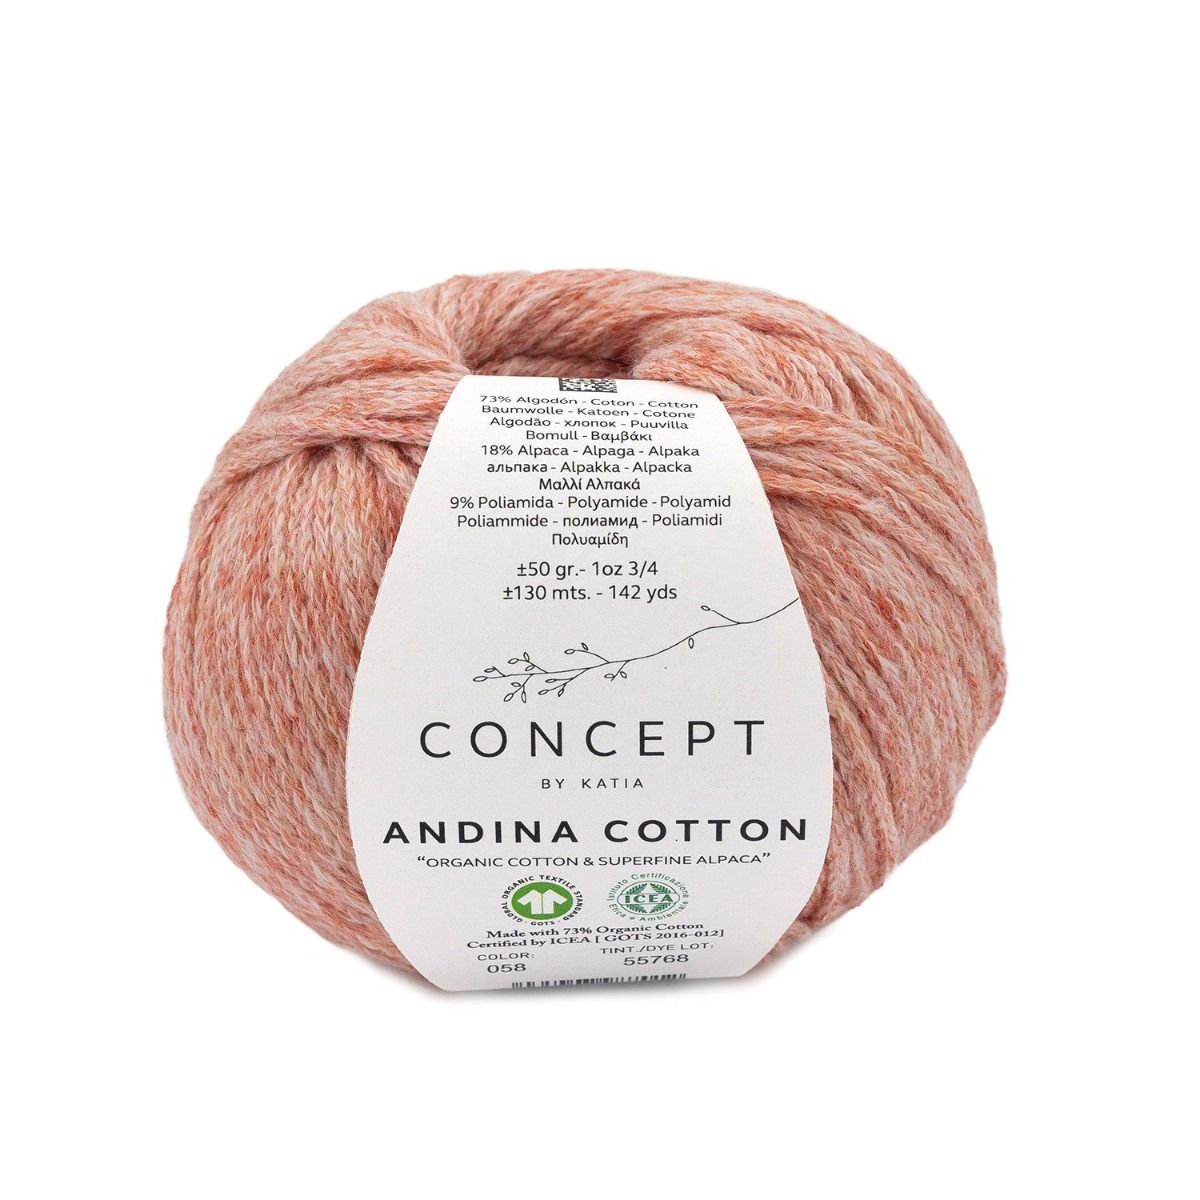 concept-andina-cotton-katia-yarns